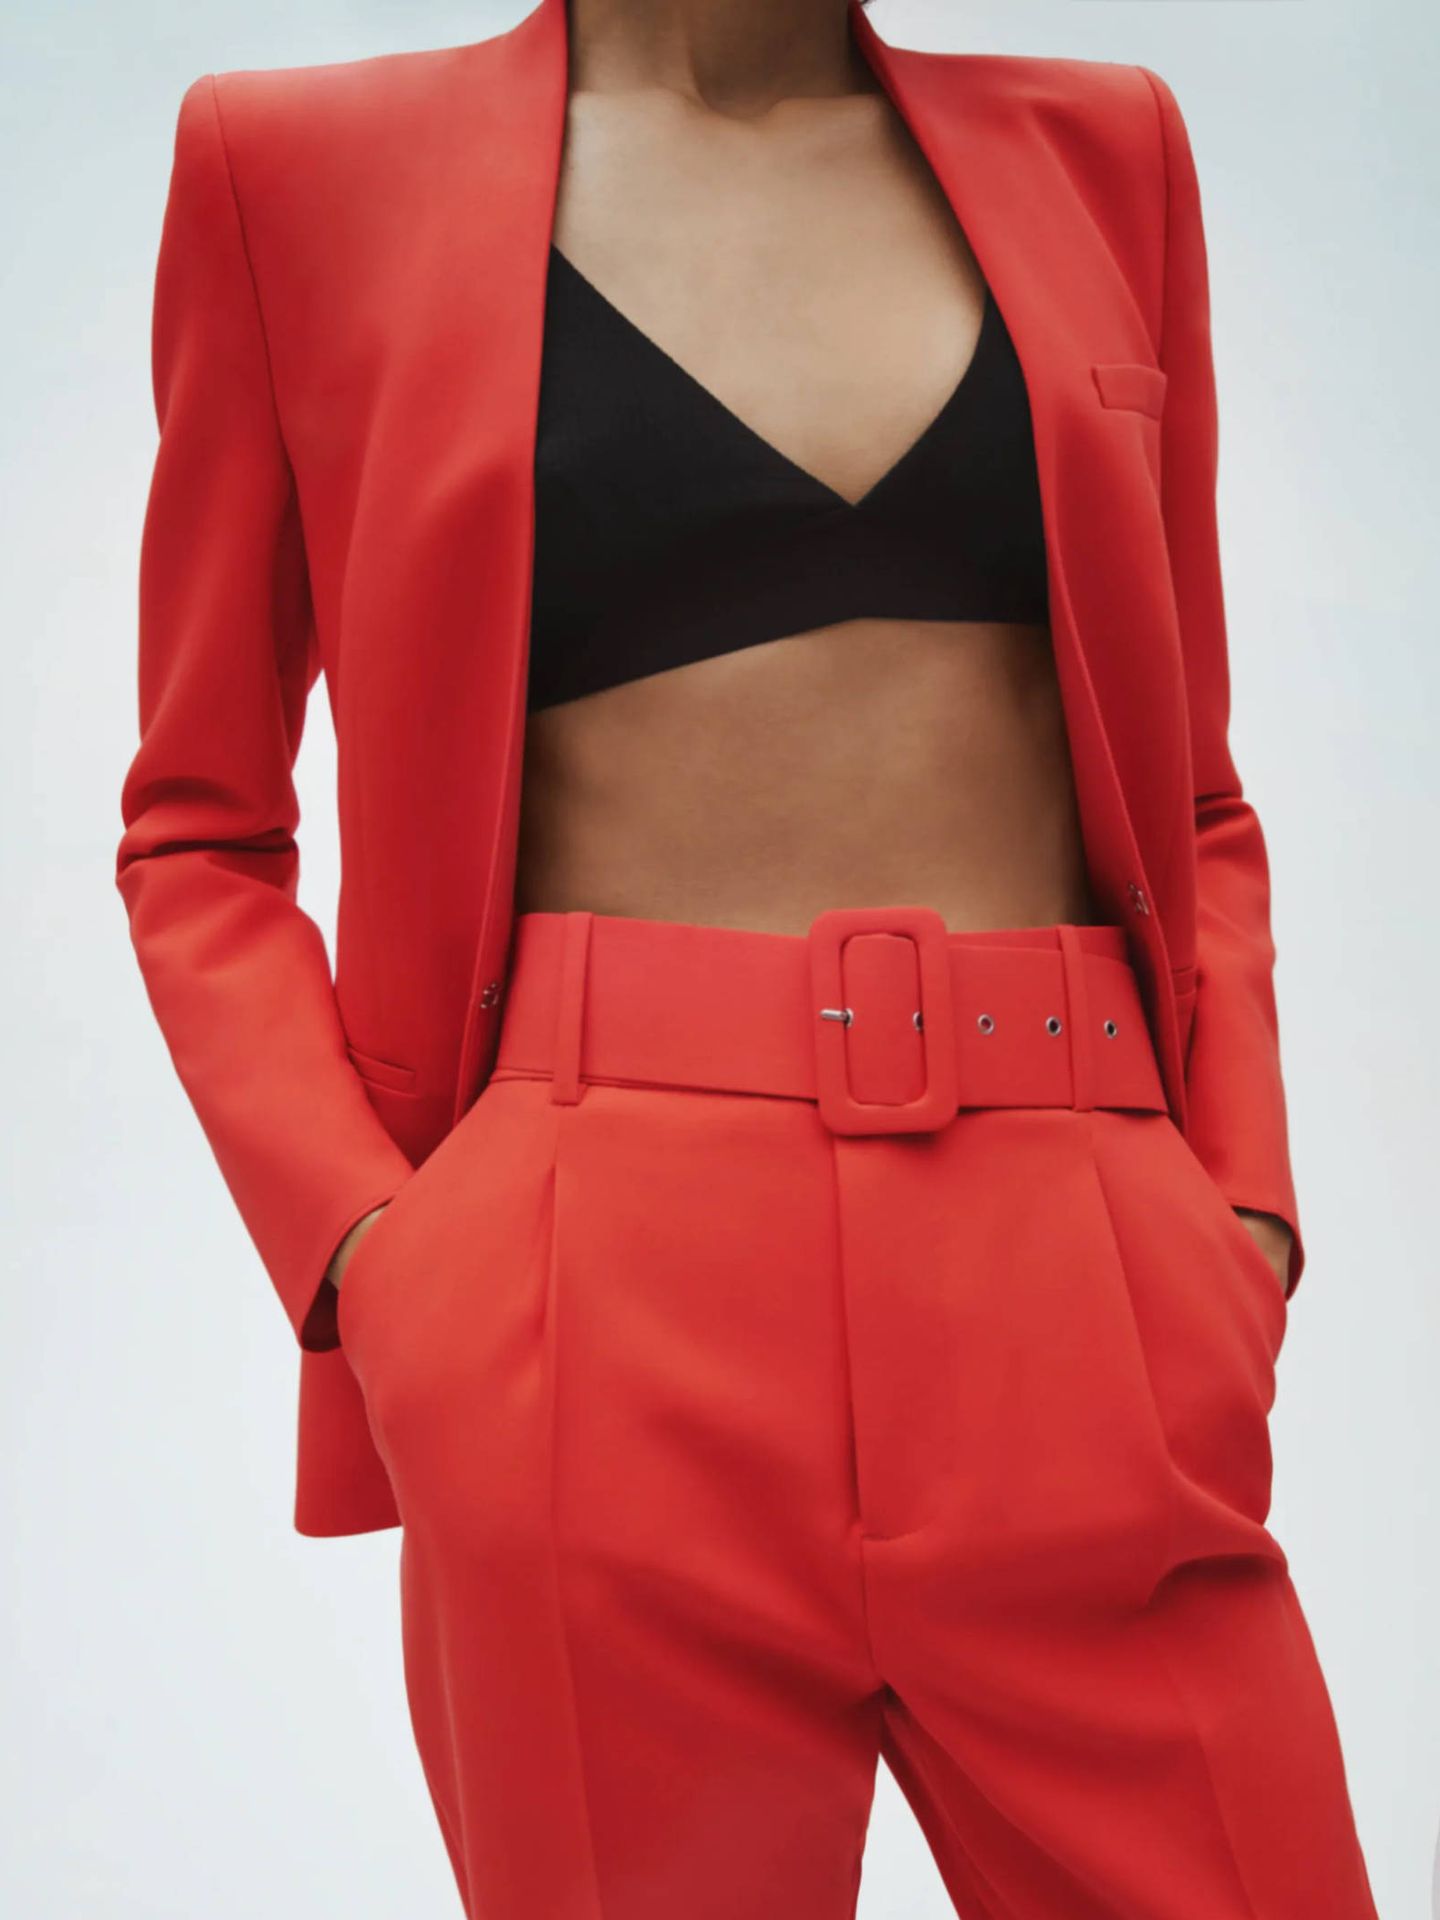 Un traje pantalón rojo: la prenda que empodera a las mujeres (y la